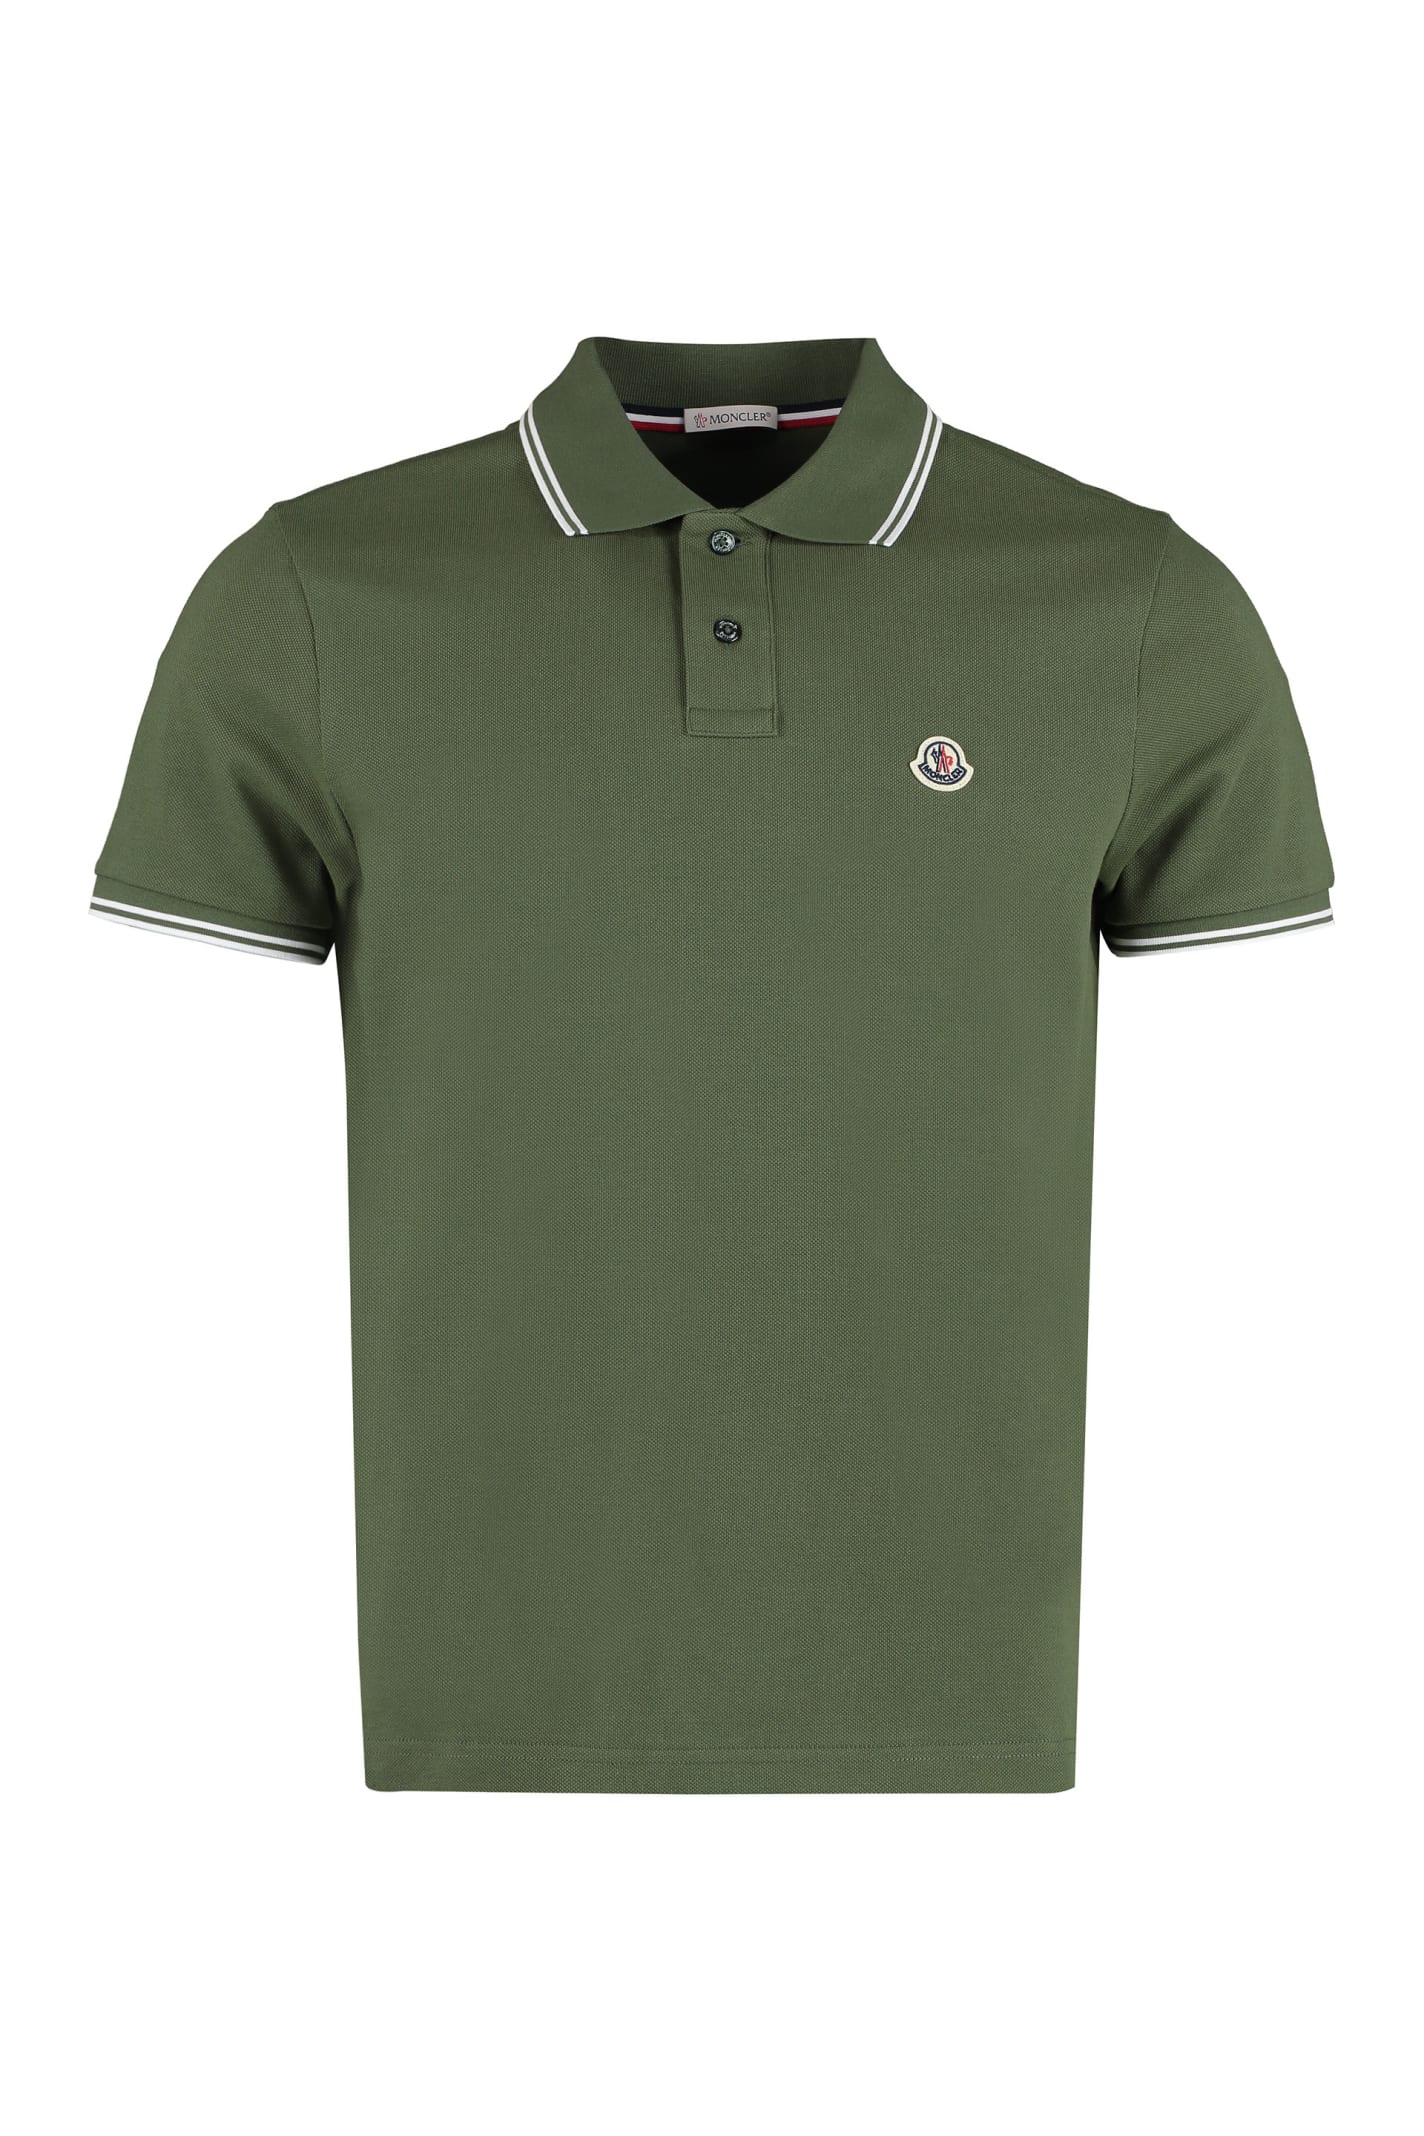 Moncler Short Sleeve Cotton Polo Shirt In Green